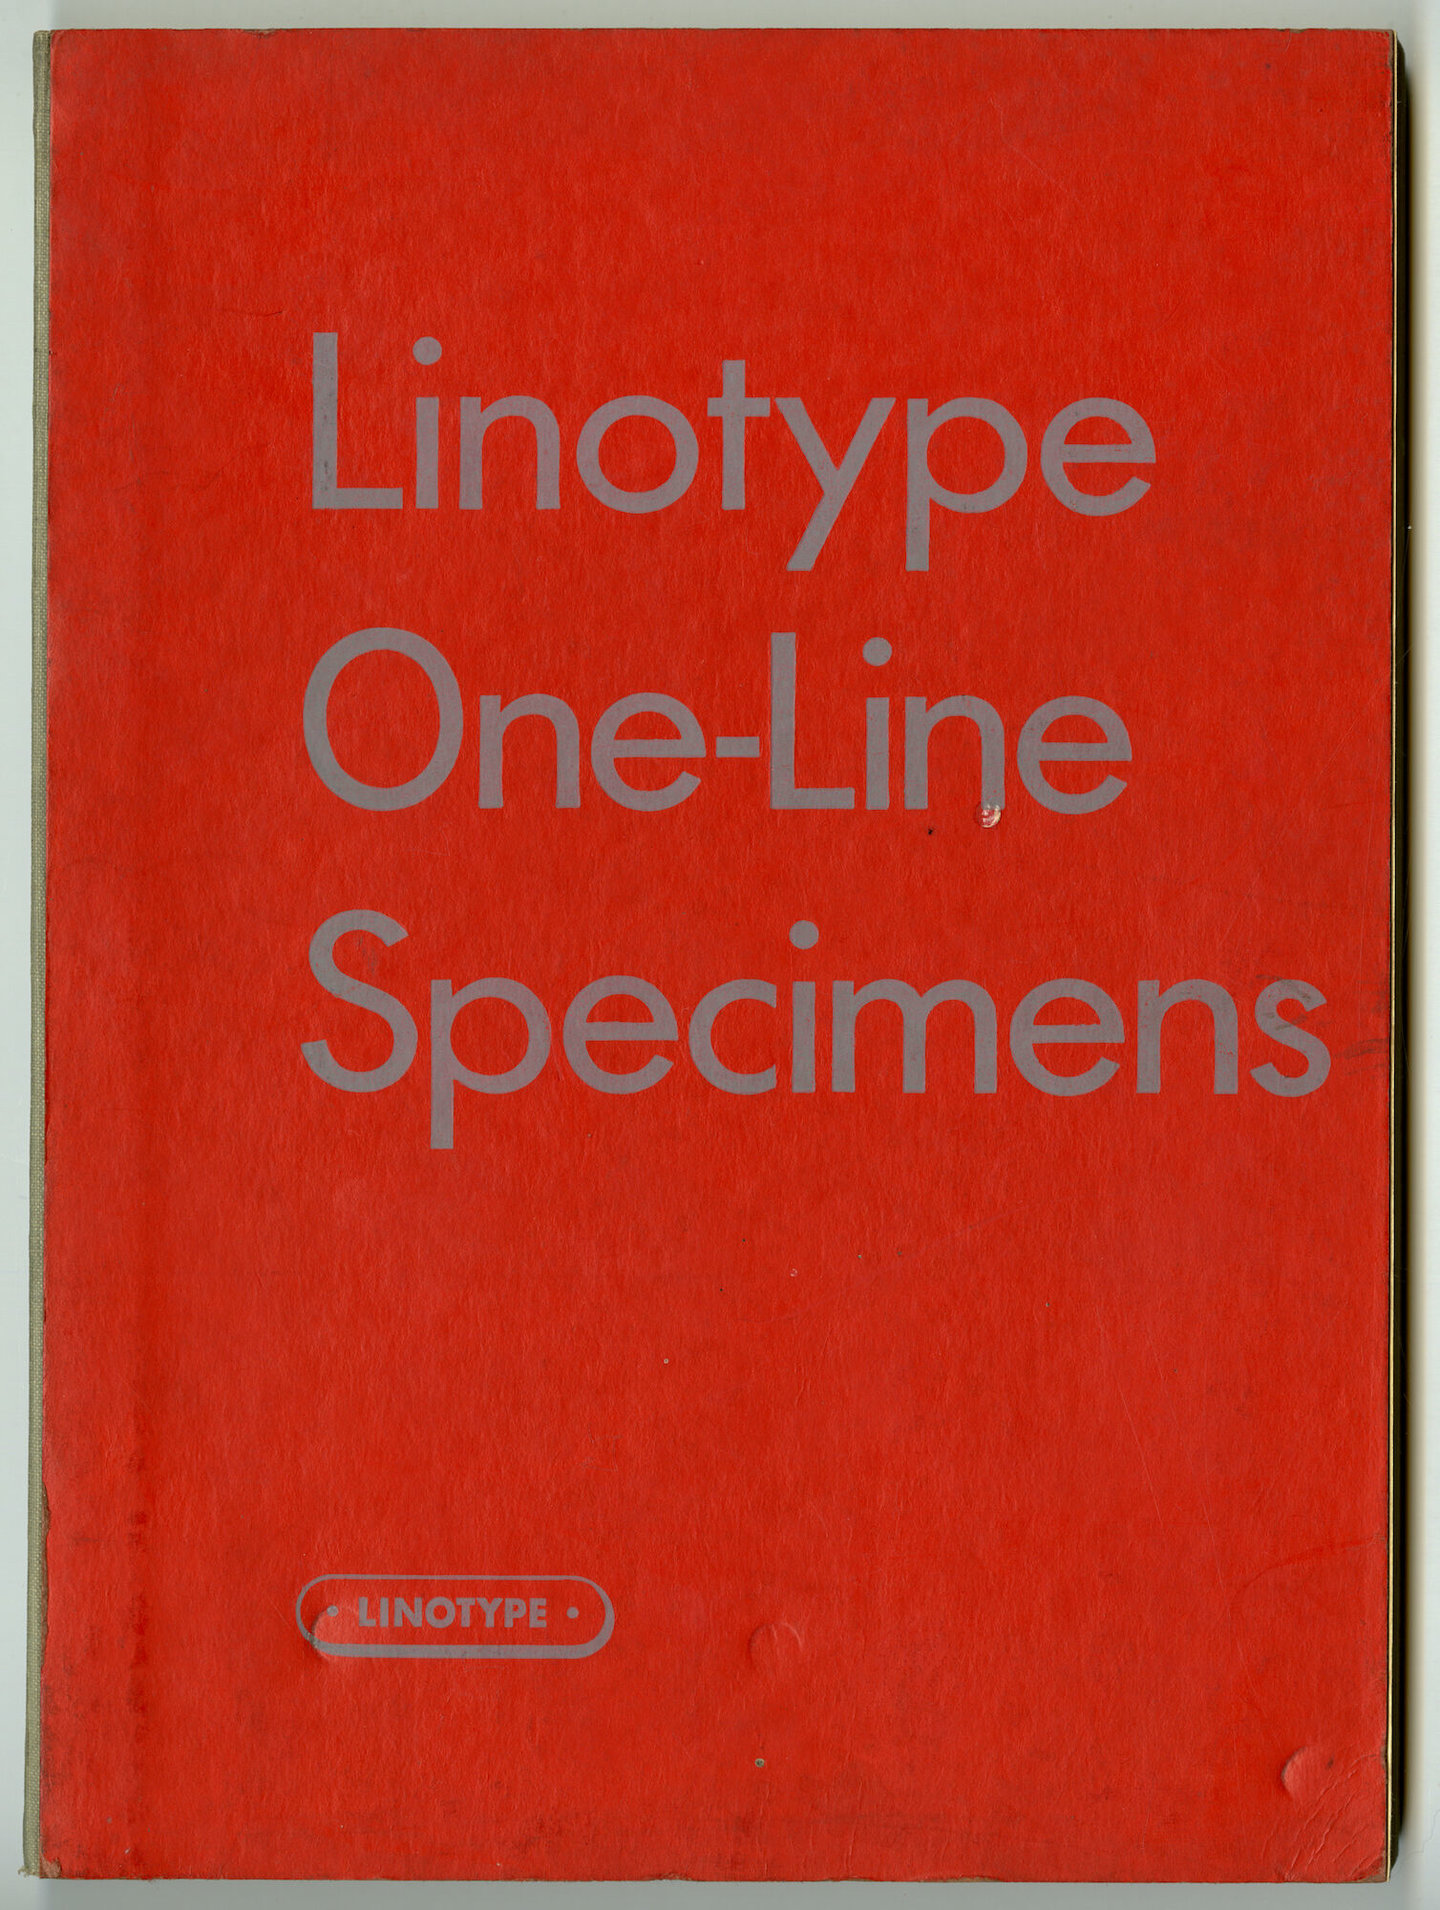 Letterproef met verschillende lettertypes van Linotype